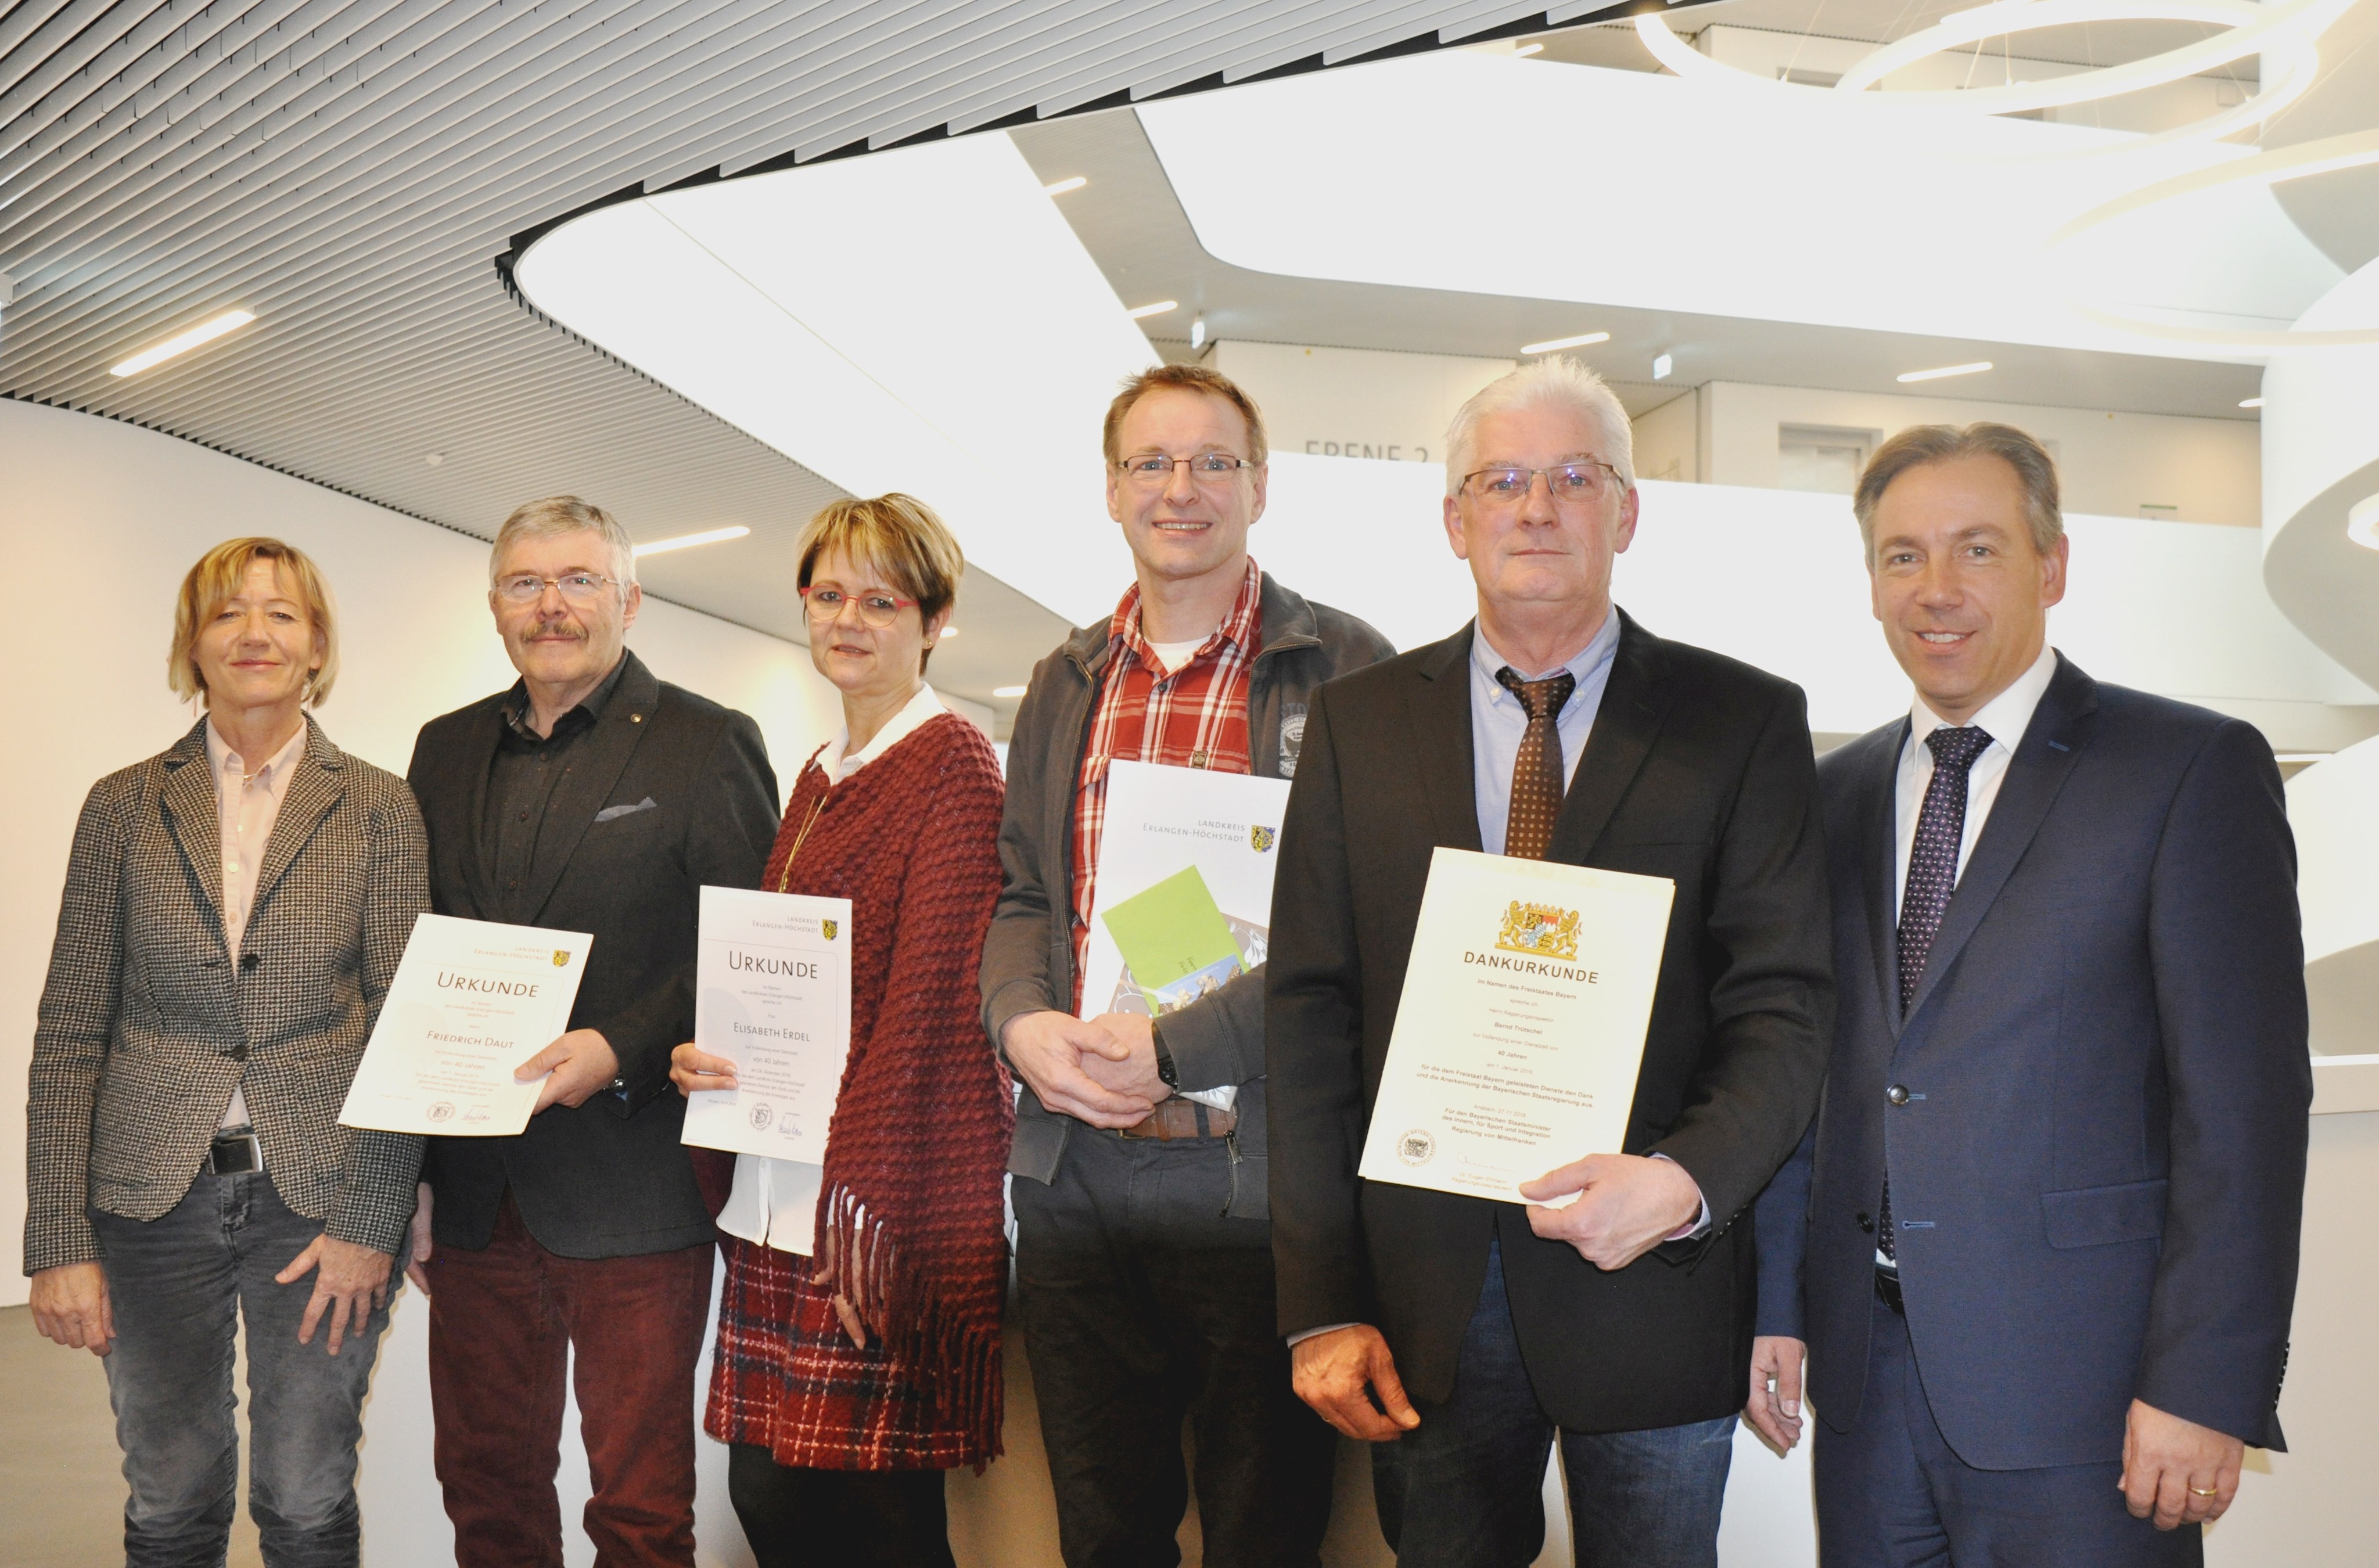 Landrat Alexander Tritthart (r.) und Personalratsvorsitzende Gudrun Wagner (l.) gratulierten den Jubilaren Friedrich Daut, Elisabeth Erdel, Heiko Meller und Bernd Trütschel (v.l.n.r.).